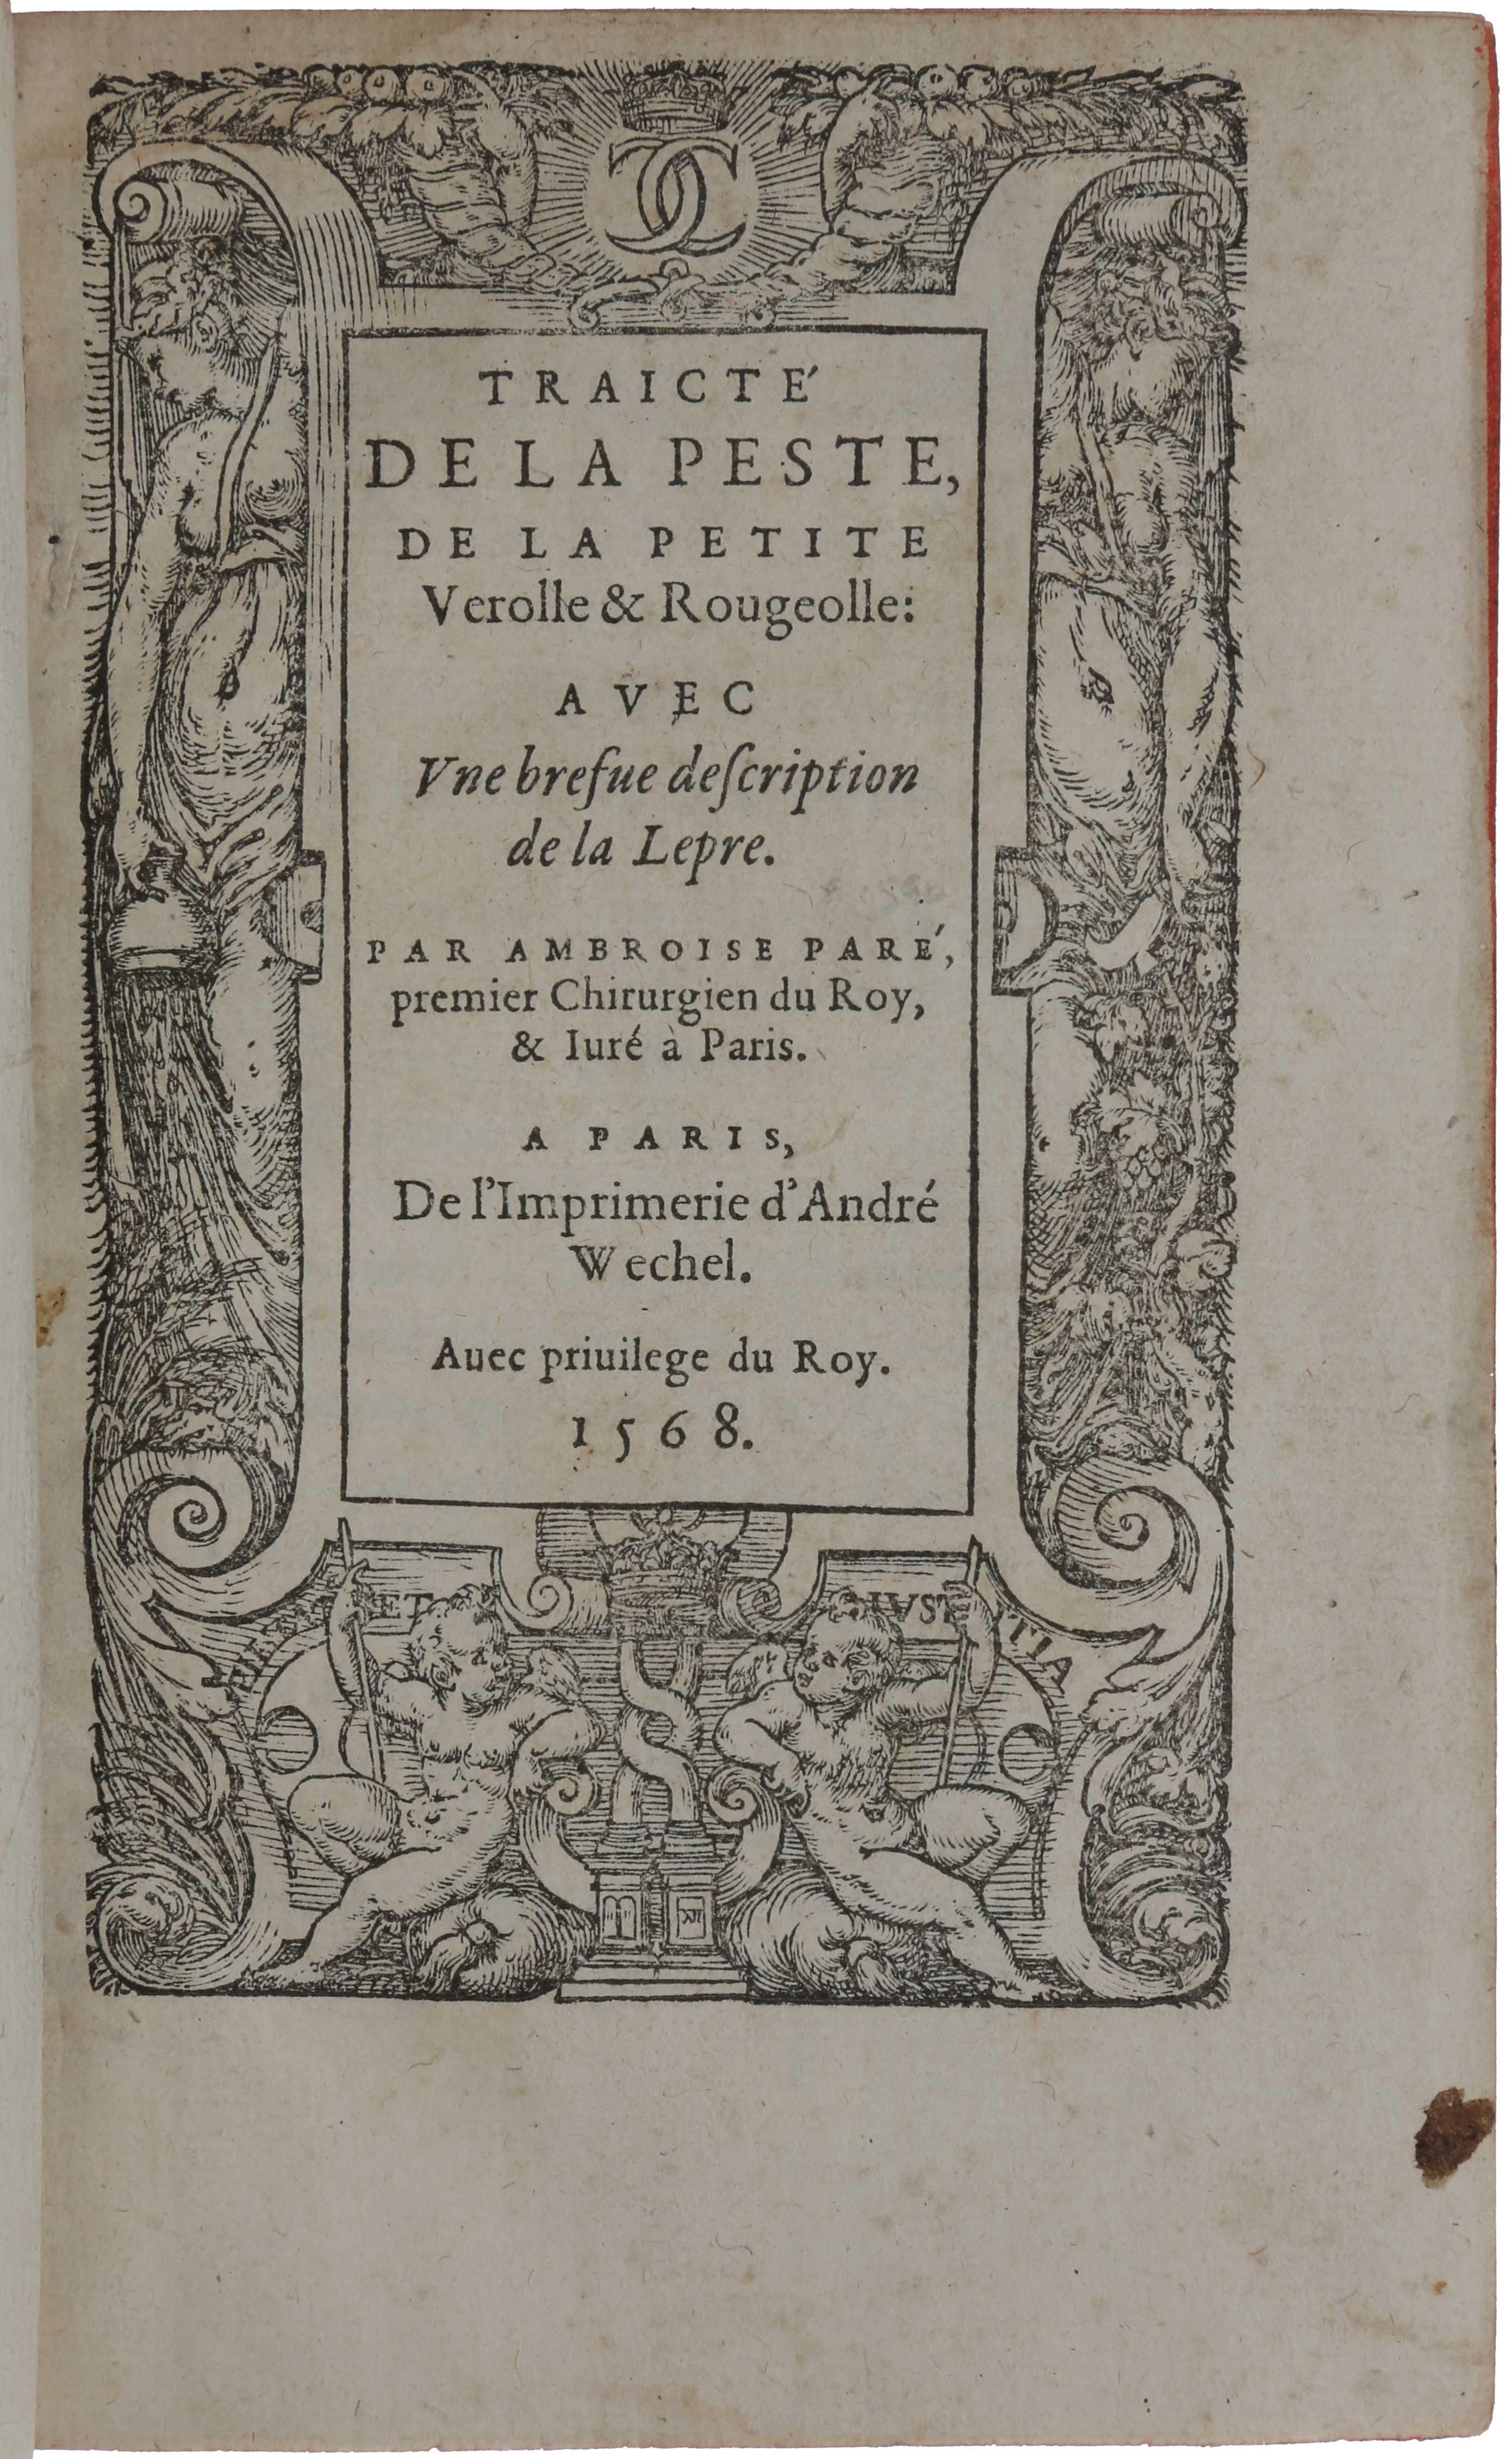 Item #4567 Traicté de la peste, de la petite verolle & rougeolle: avec une brefve description de la lepre. Ambroise PARÉ.